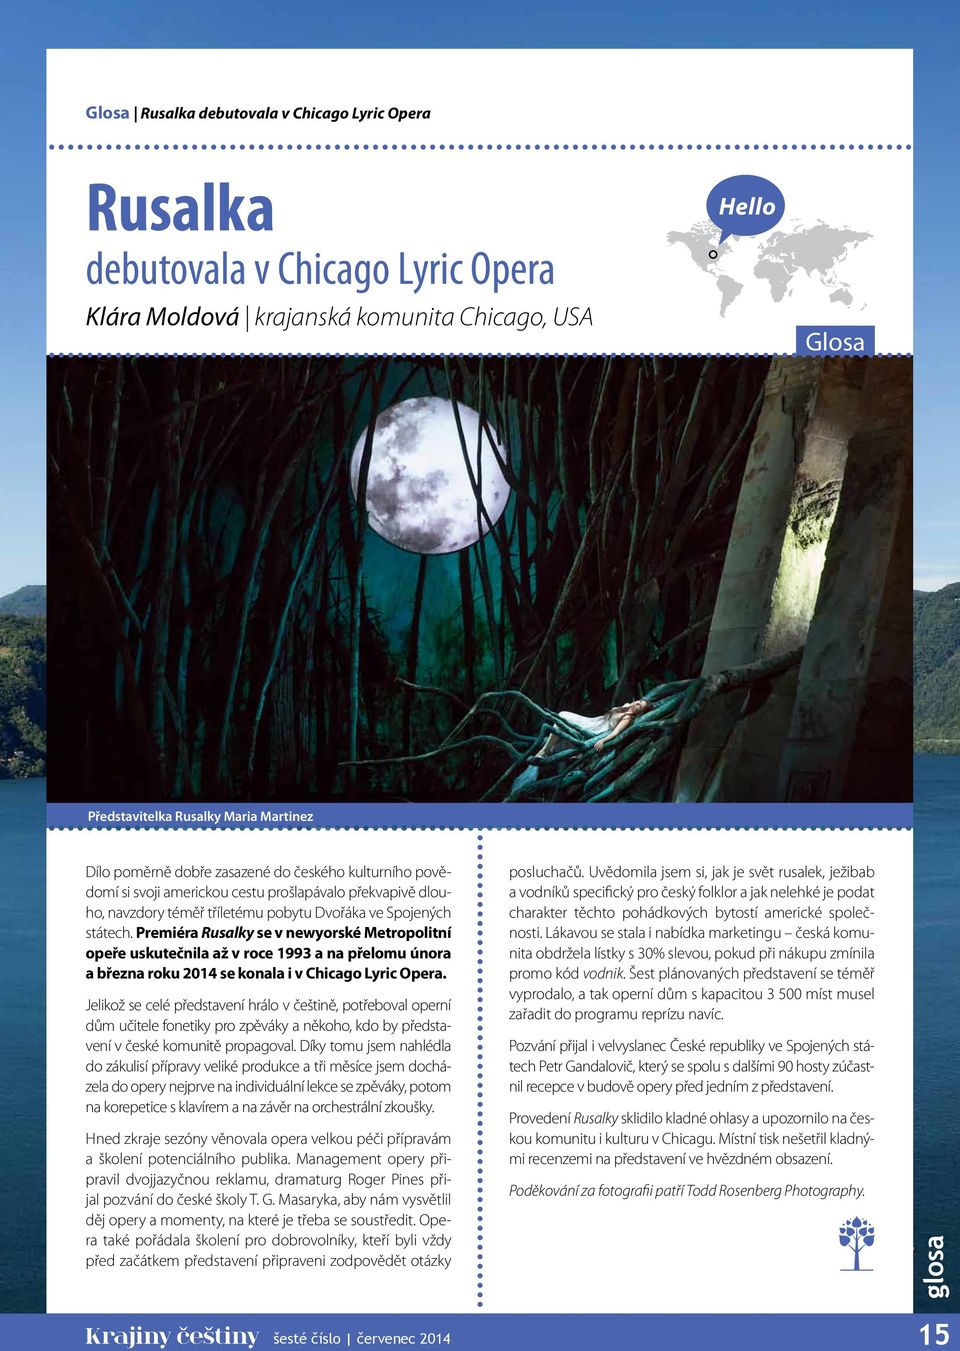 Premiéra Rusalky se v newyorské Metropolitní opeře uskutečnila až v roce 1993 a na přelomu února a března roku 2014 se konala i v Chicago Lyric Opera.